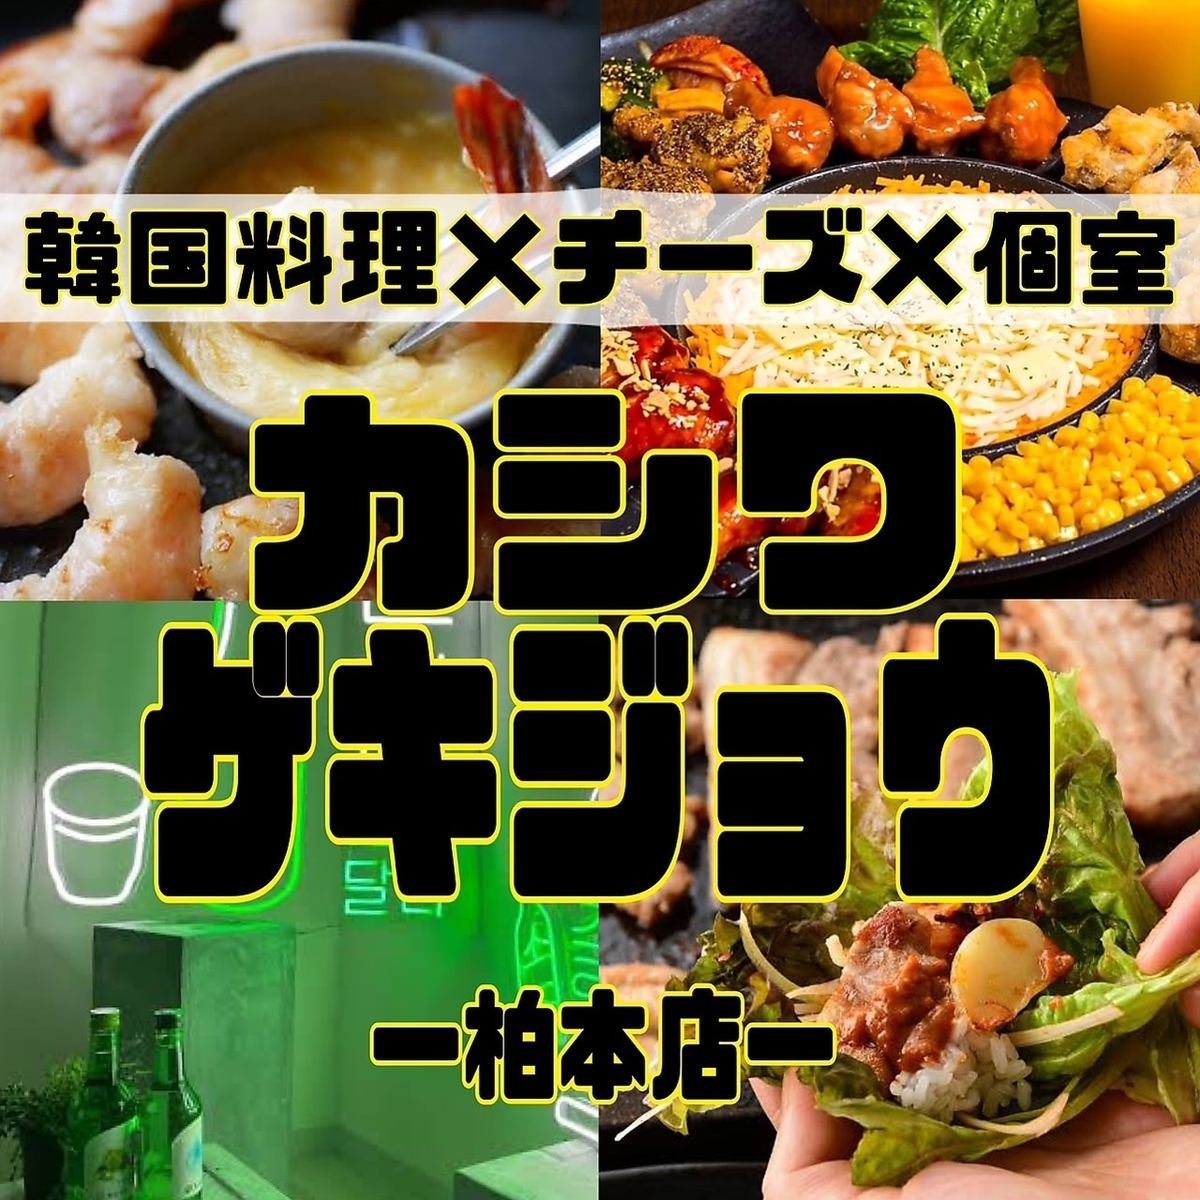 柏站NEW OPEN ☆ 設計師包廂和2,980日元100種韓國肉壽司起司肉吧無限吃喝